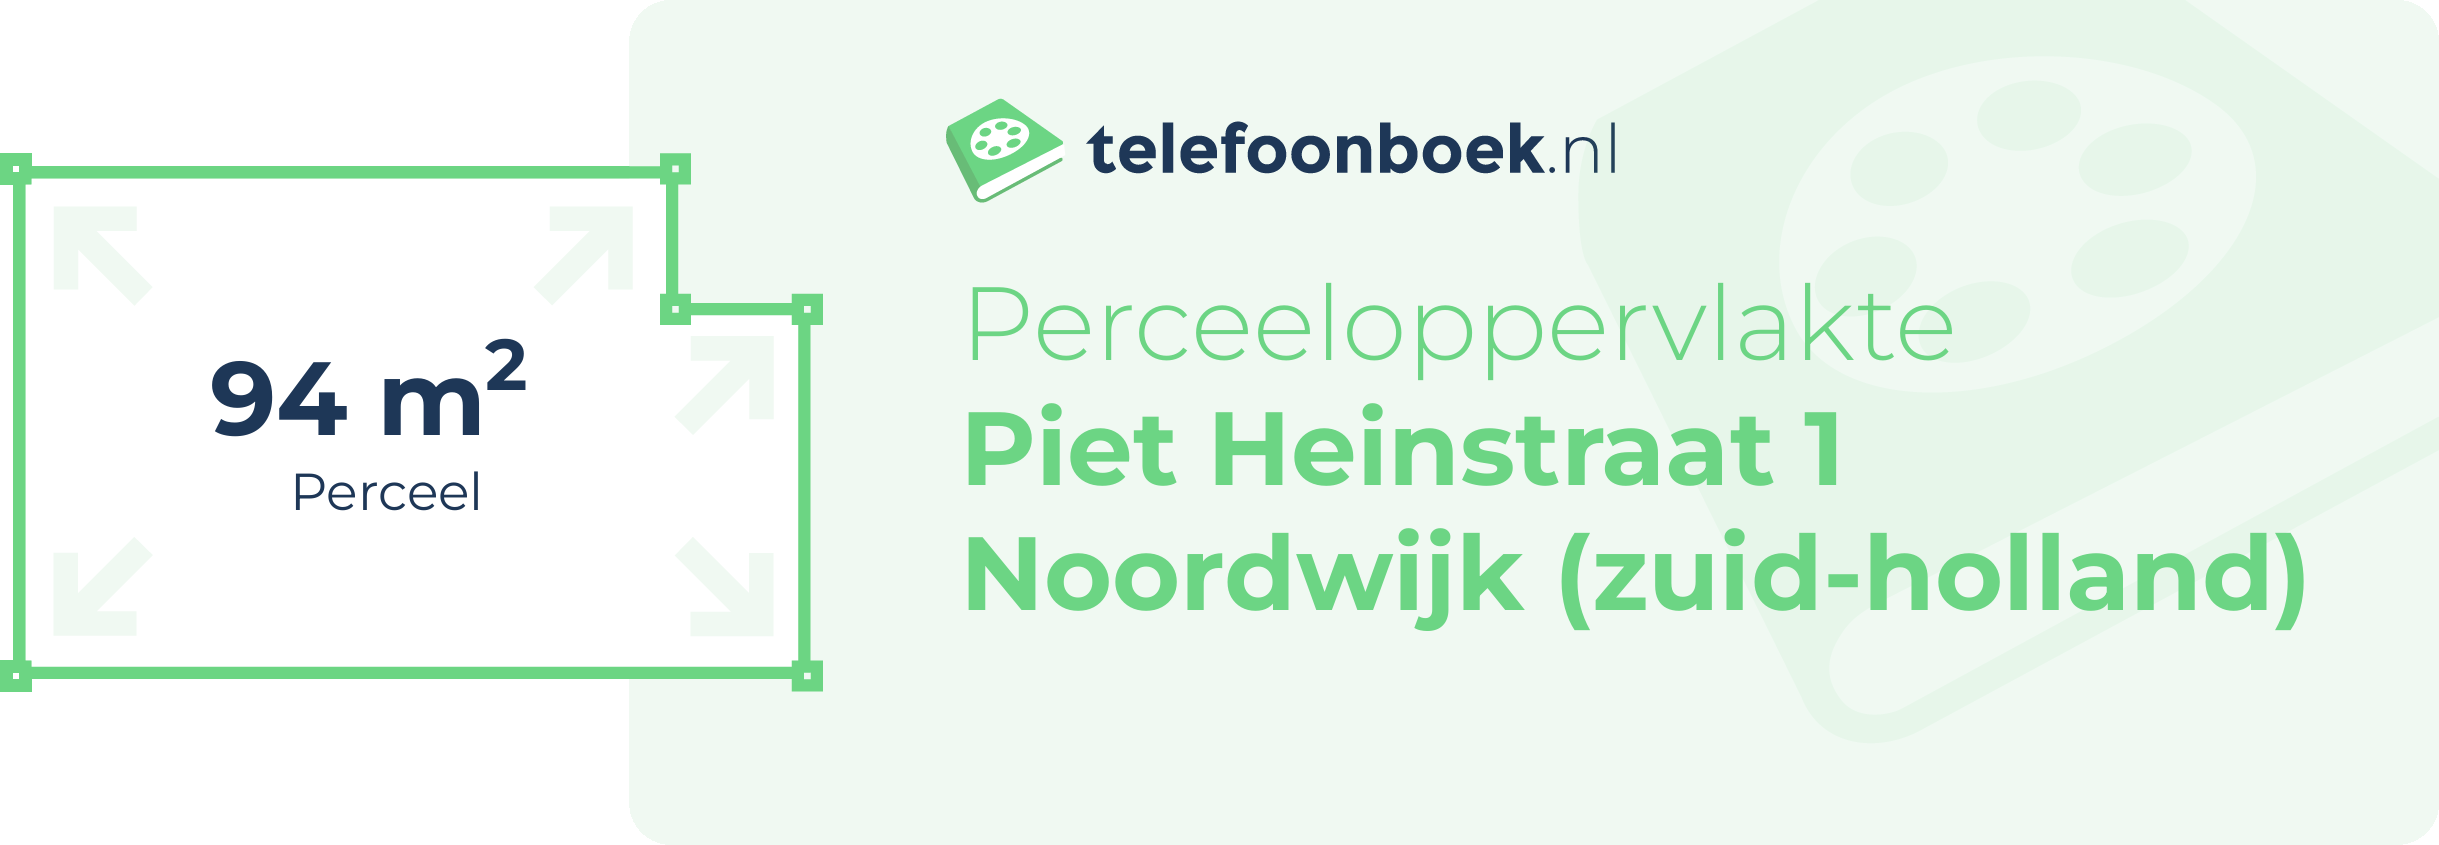 Perceeloppervlakte Piet Heinstraat 1 Noordwijk (Zuid-Holland)